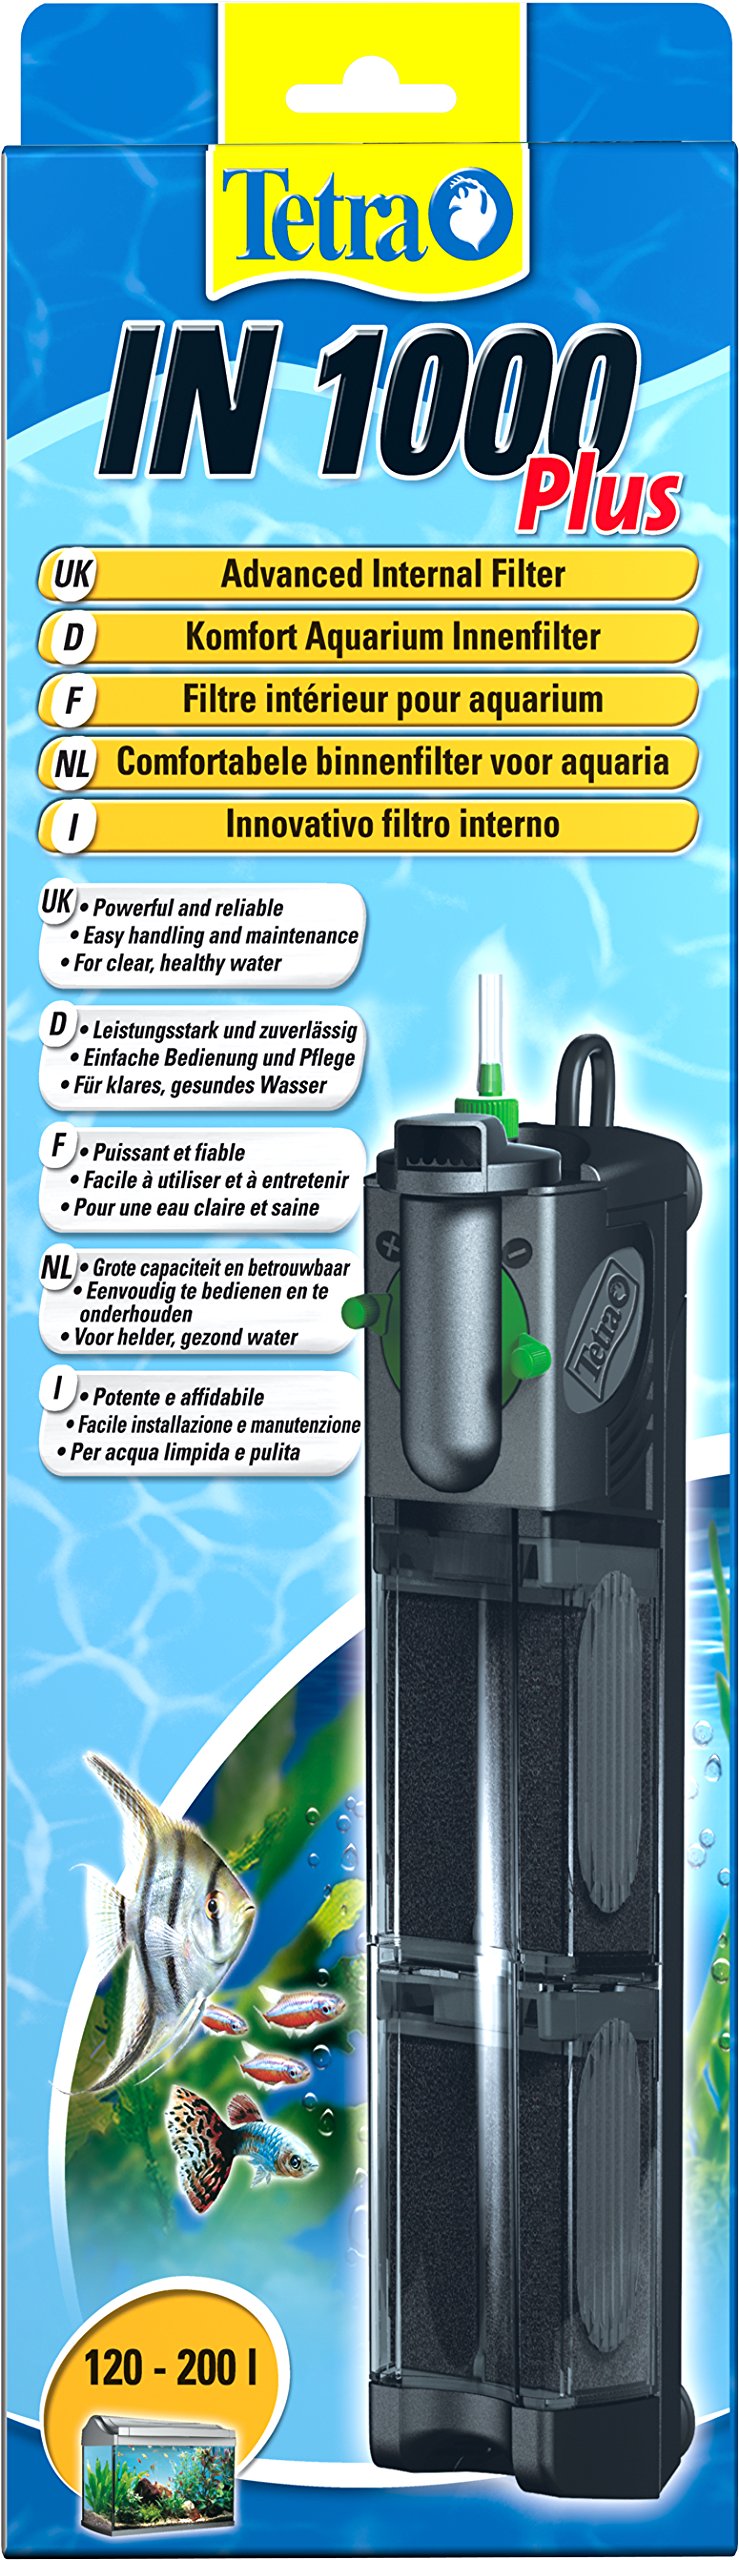 Tetra IN 1000 plus Aquarium Innenfilter - Filter für klares und gesundes Wasser, mechanische, biologische und chemische Filterung, geeignet für Aquarien mit 120 - 200 Liter